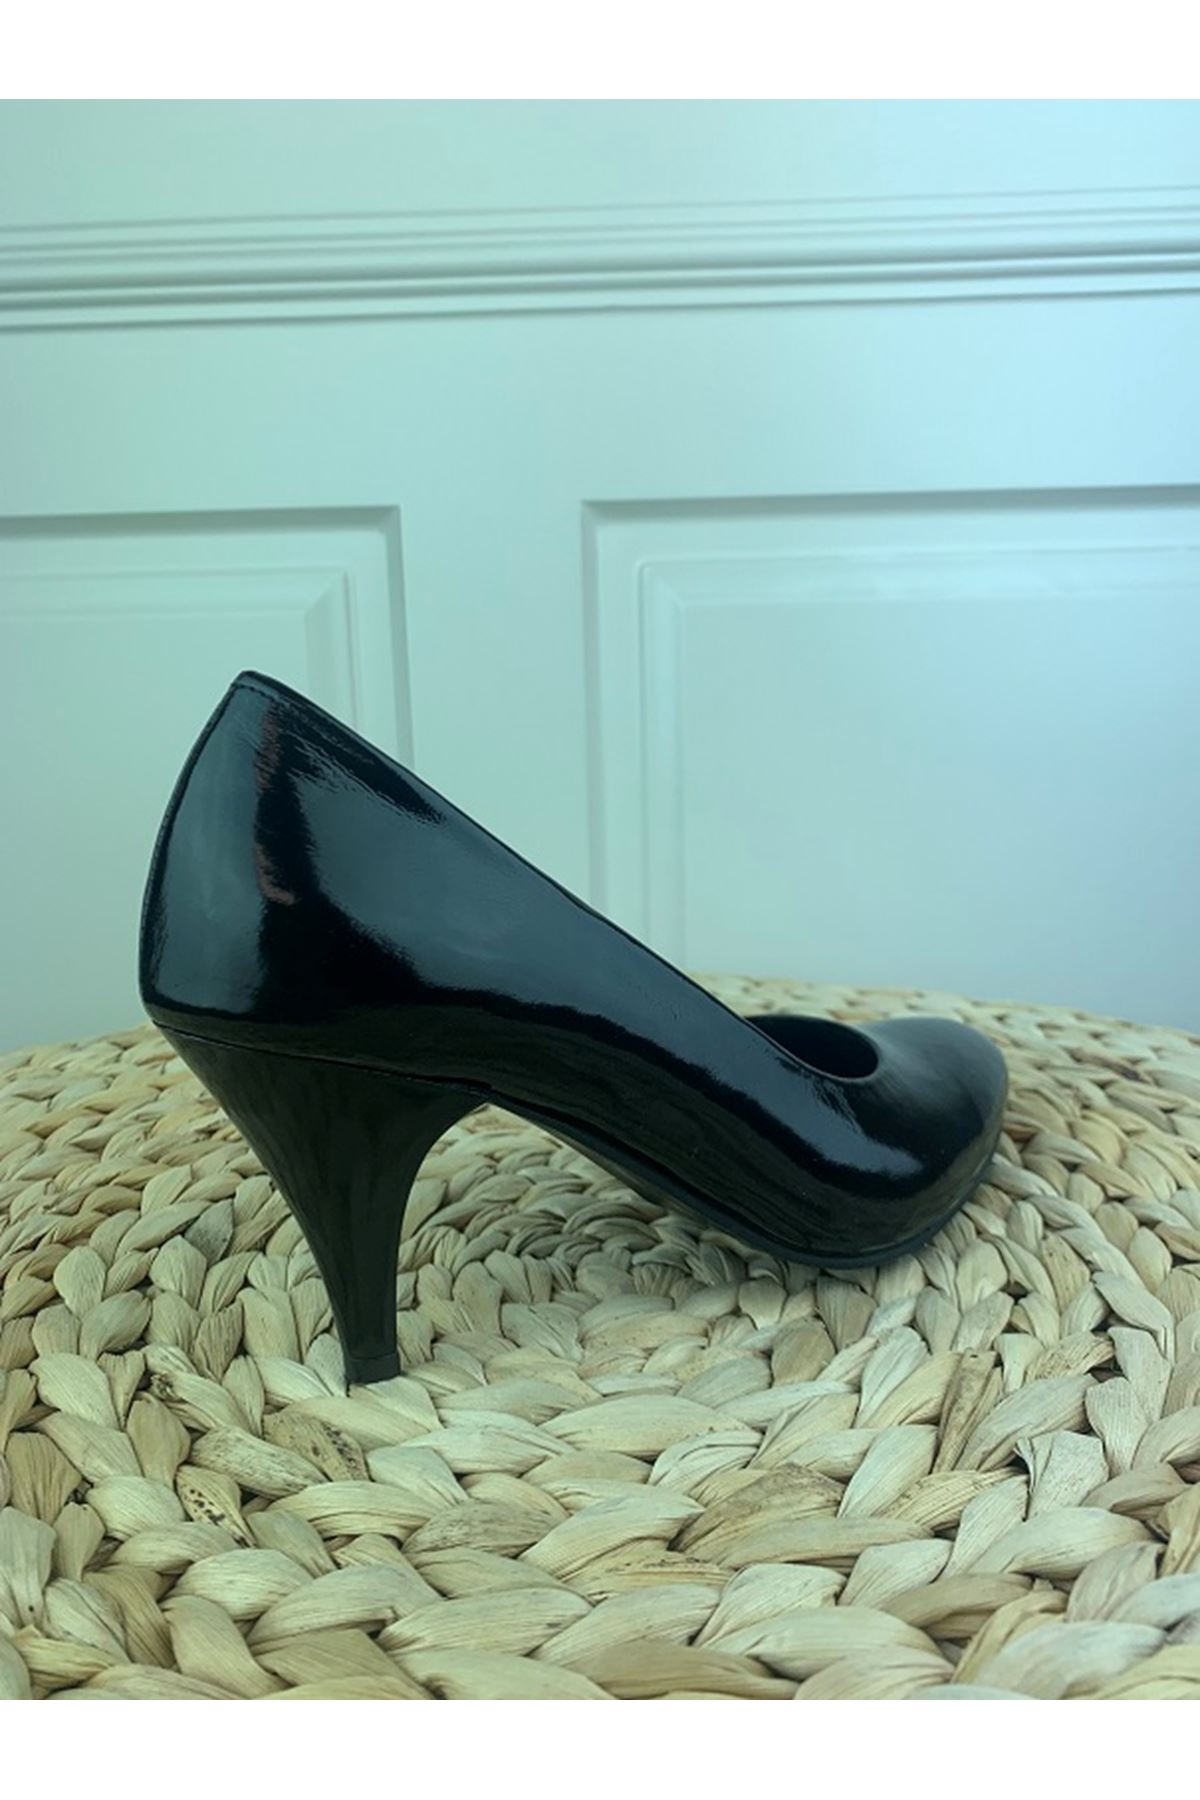 Hakiki Deri Kadın Deri Topuklu Ayakkabı 1784 Gate Shoes -Siyah